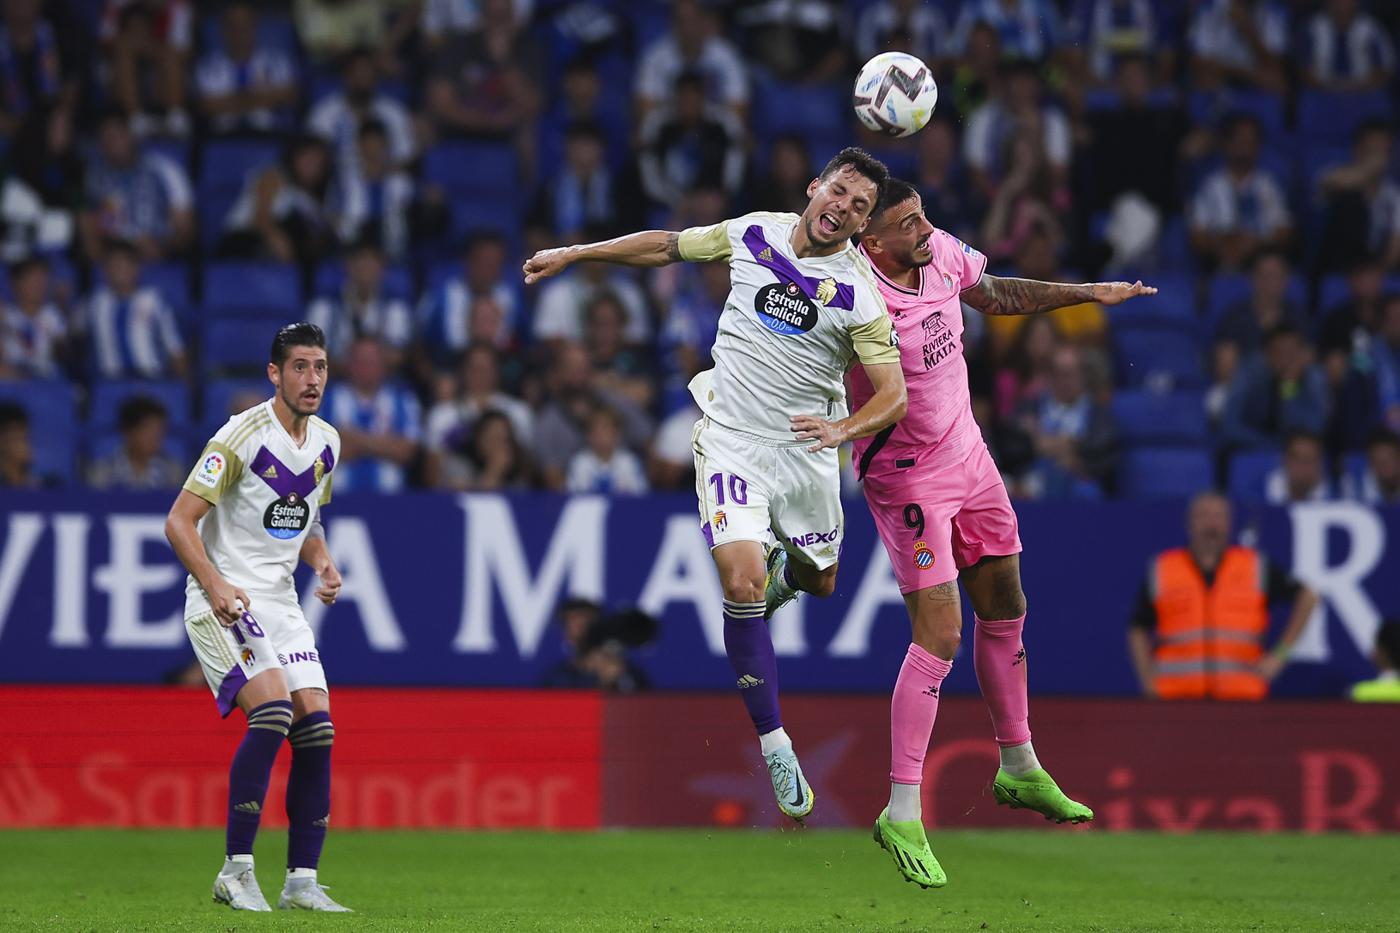 Valladolid gegen Espanyol - 2-1. Spanische Meisterschaft, Runde 24. Spielbericht, Statistik.